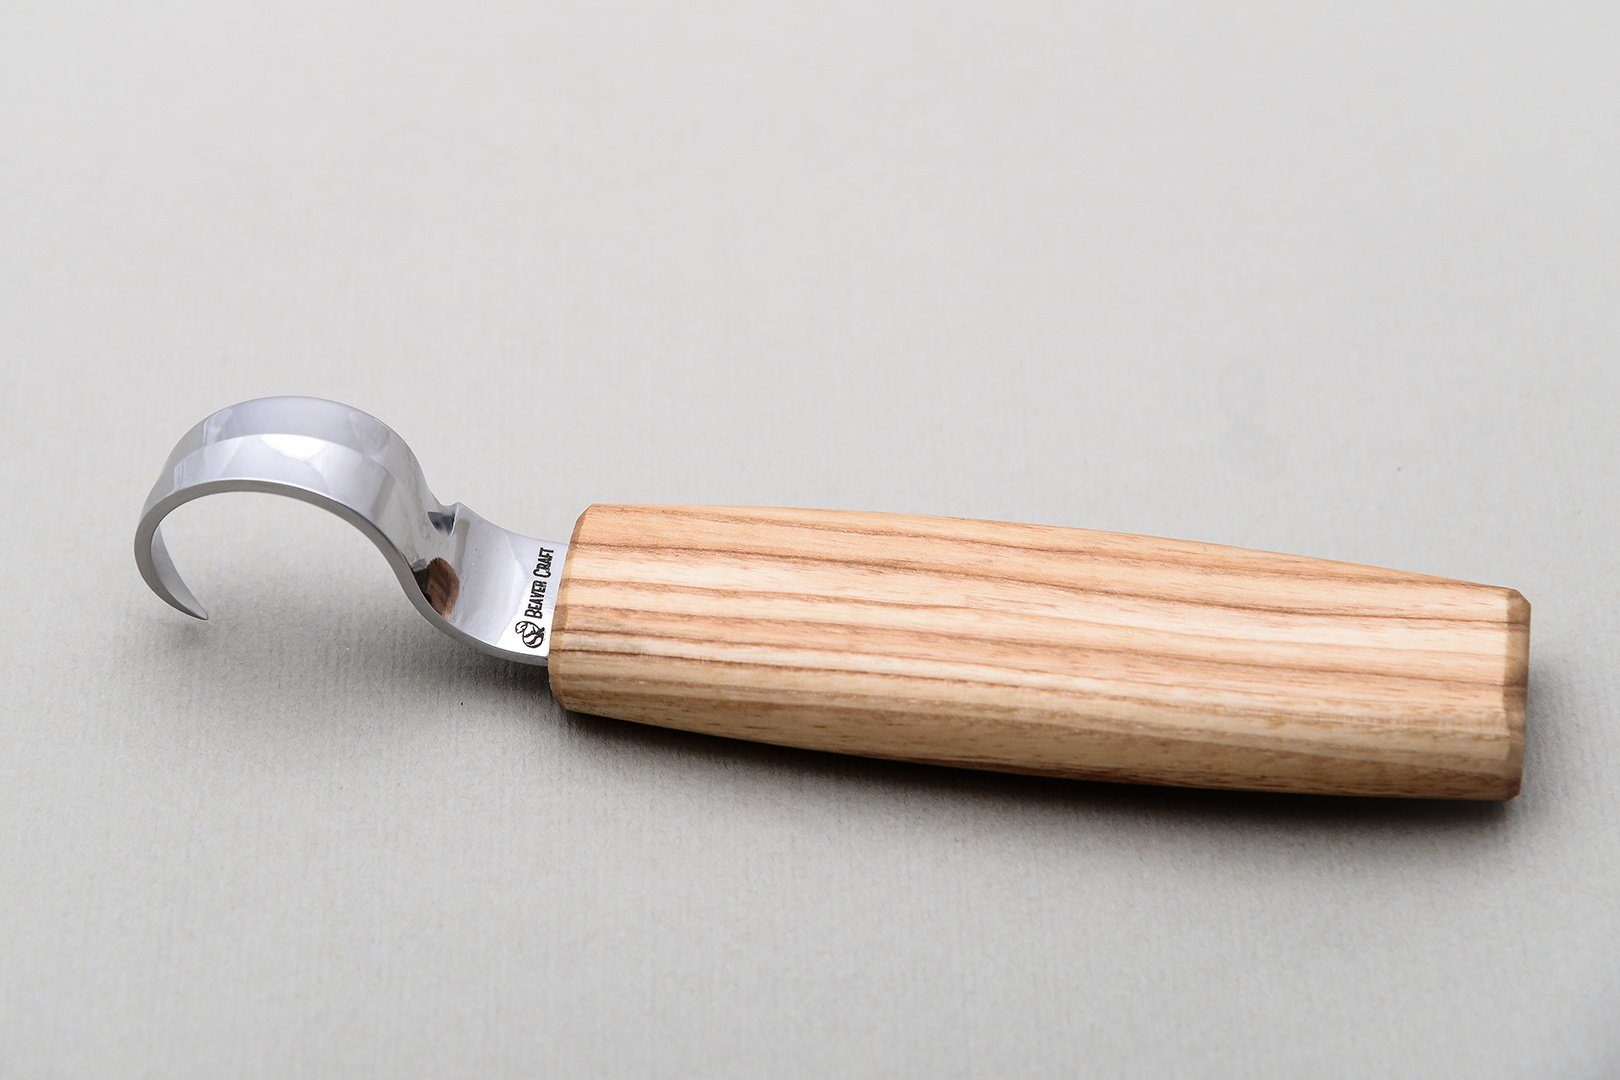 Modellierwerkzeug mit Tasche Beaver Löffelschnitzmesser Rechtshänder Werkkiste Die